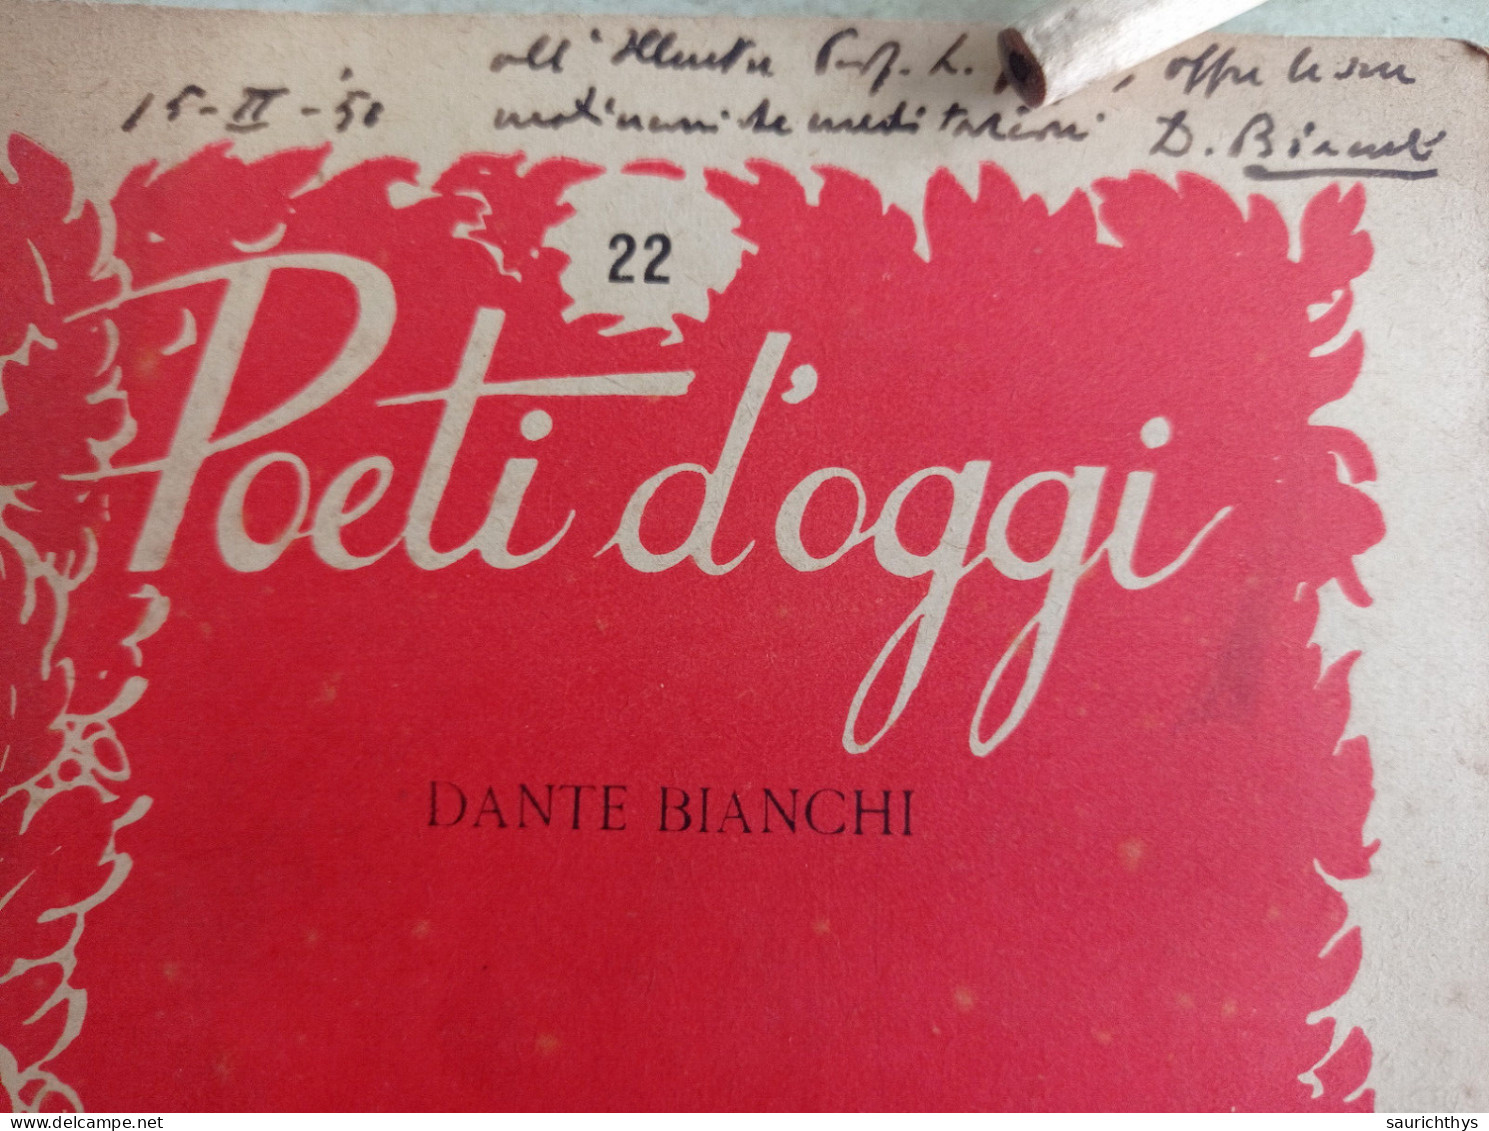 Poeti D'oggi Stralci Gastaldi Editore 1949 Autografo Di Dante Bianchi A Noto Accademico - Lyrik